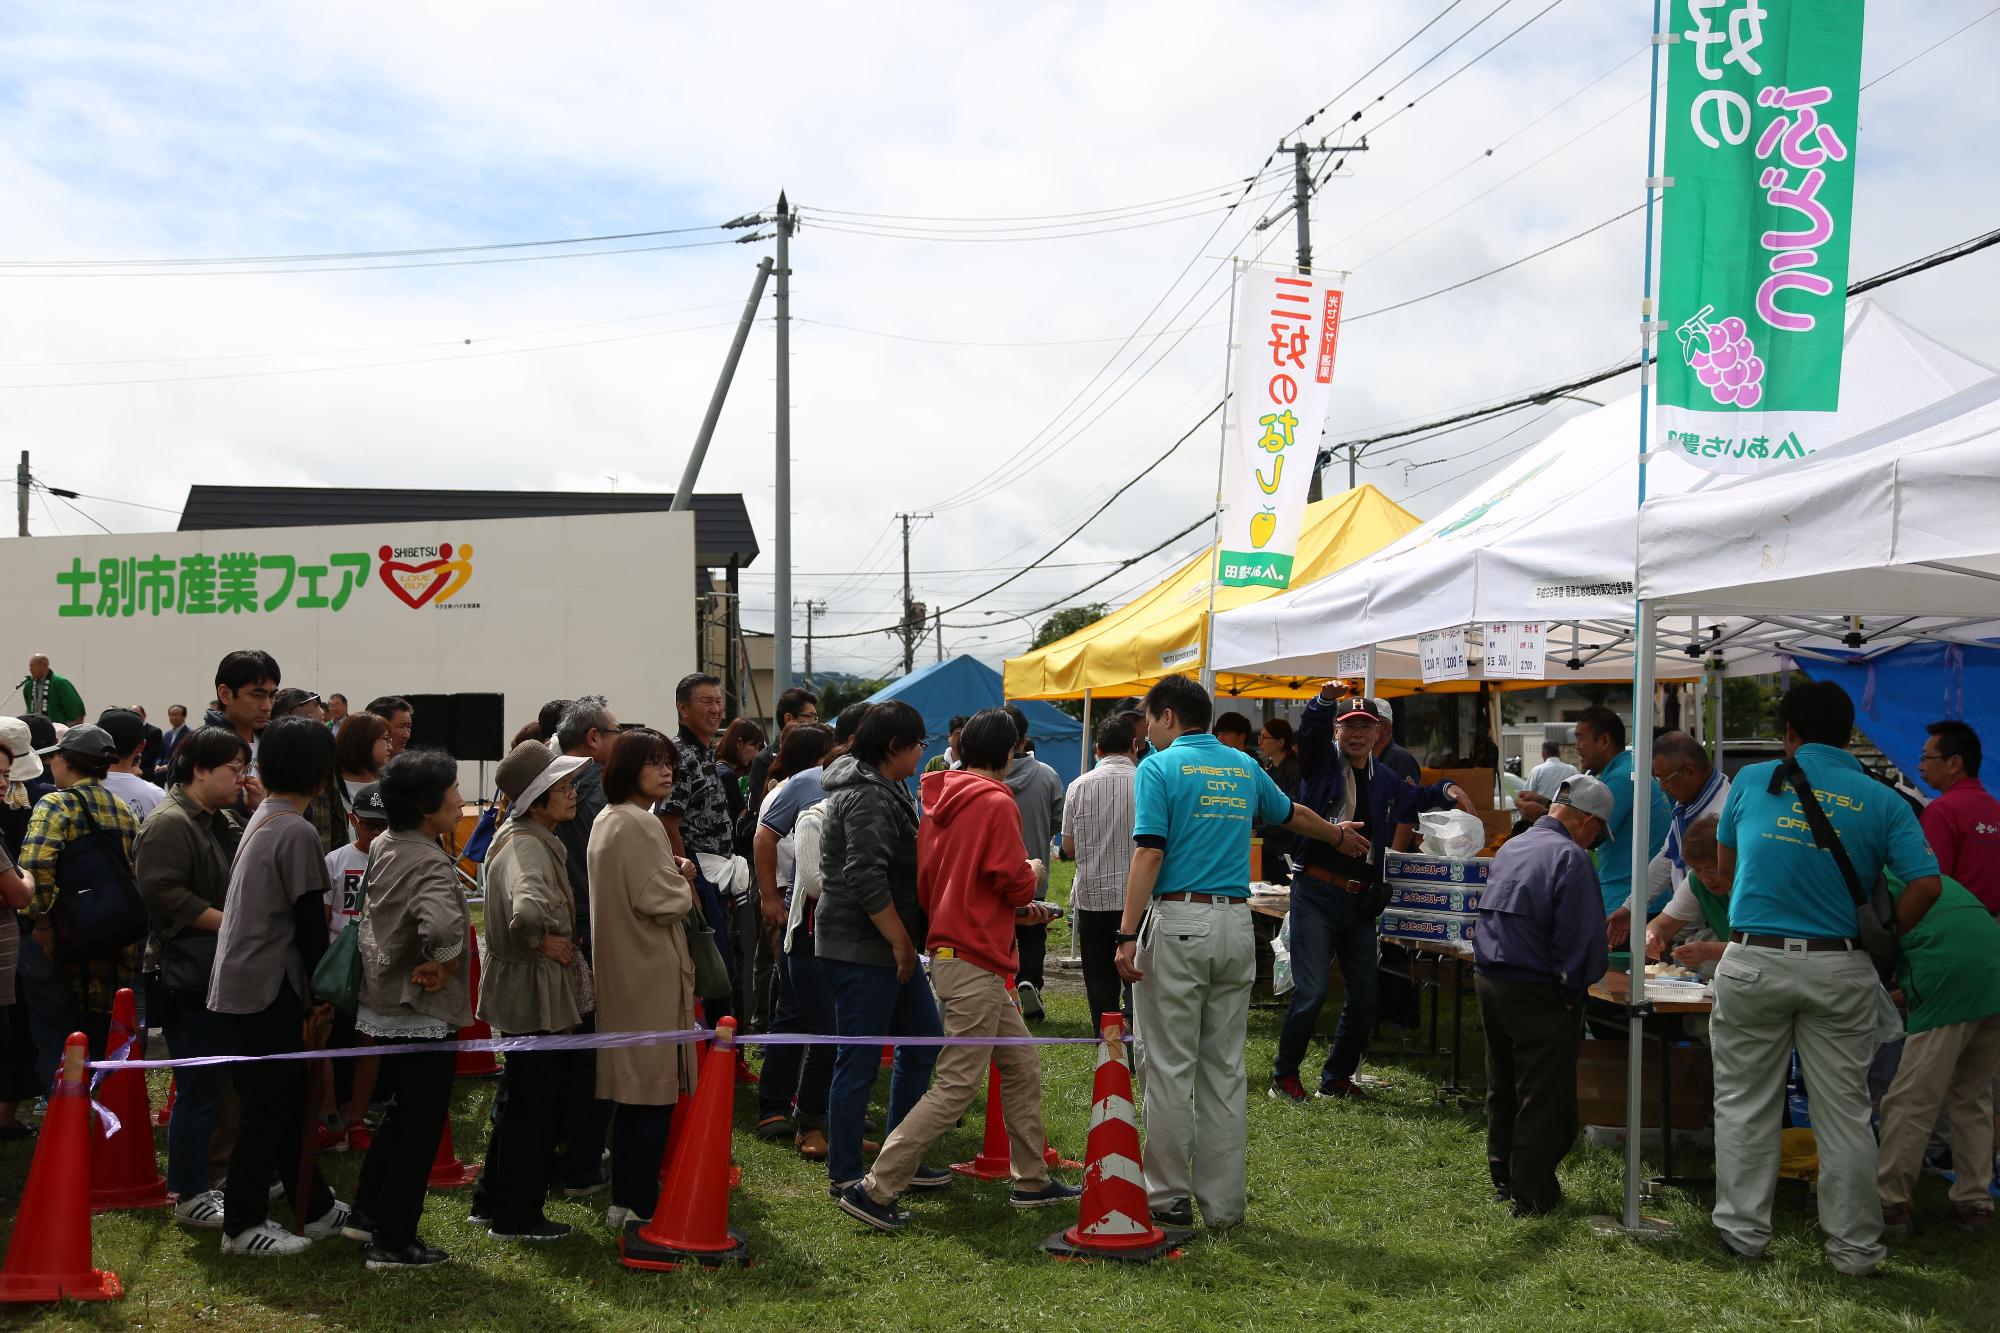 士別市産業フェアにて梨販売のテントの前に長い行列が出来ている写真